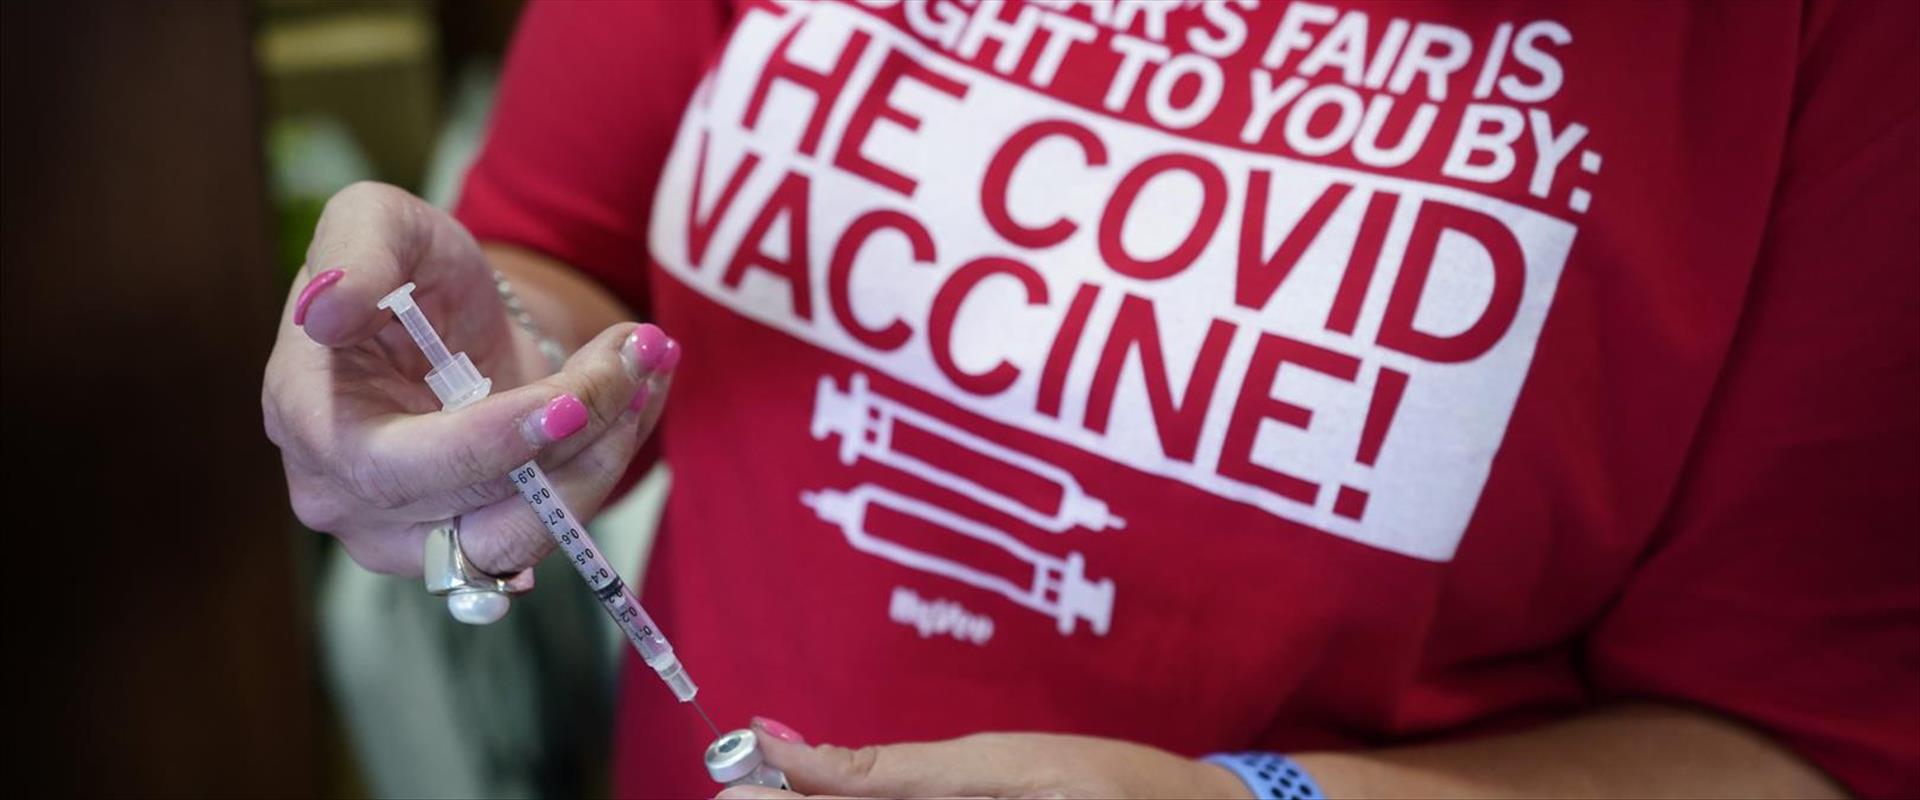 מבצע חיסונים באיווה, ארצות הברית, היום